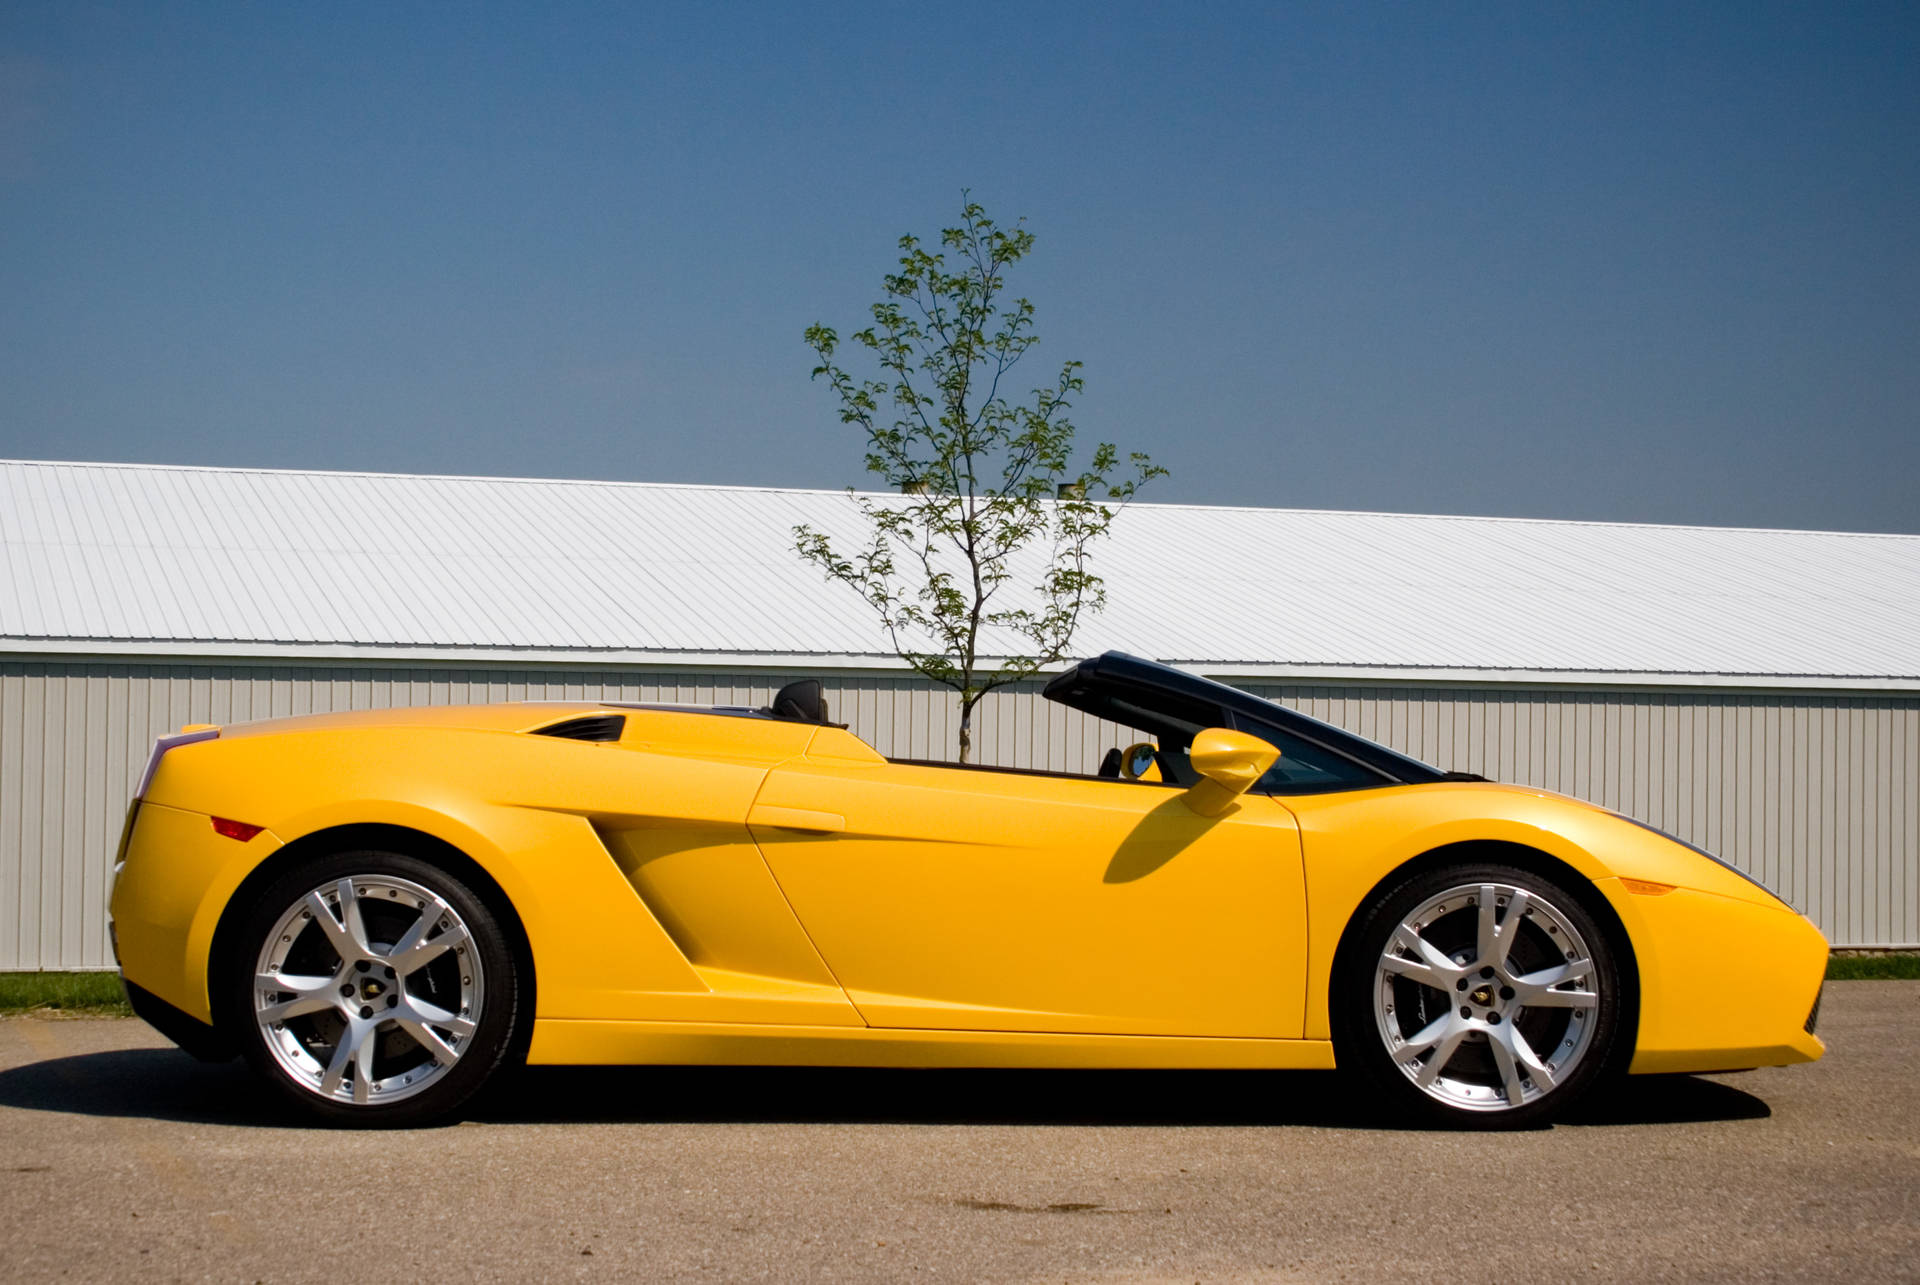 4k Lamborghini Gallardo In Yellow Paint